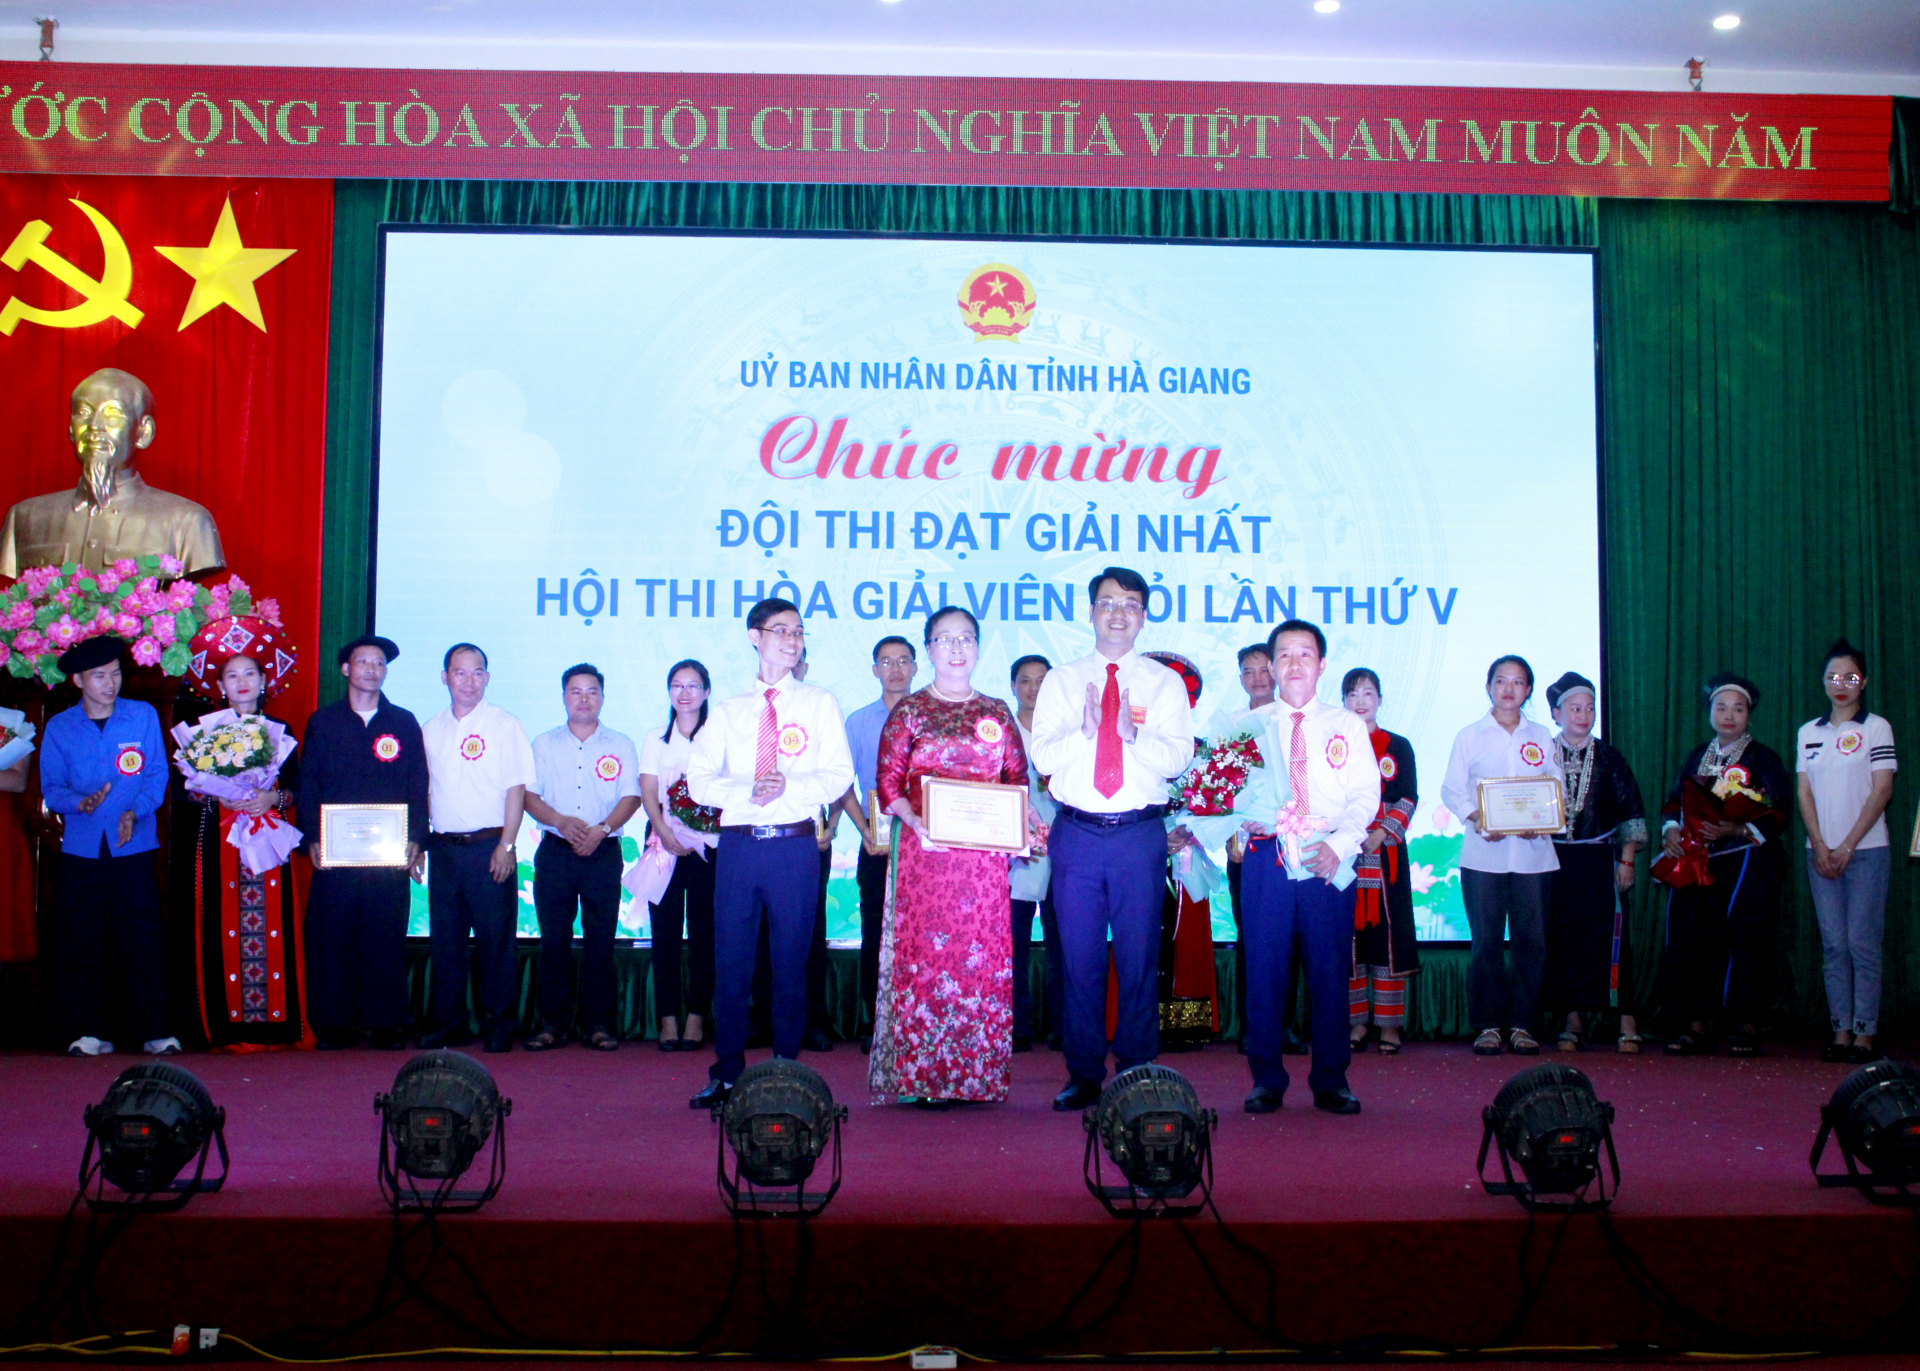 Giám đốc Sở Tư pháp, Phó Ban tổ chức hội thi trao giải Nhất cho đội thi thành phố Hà Giang.